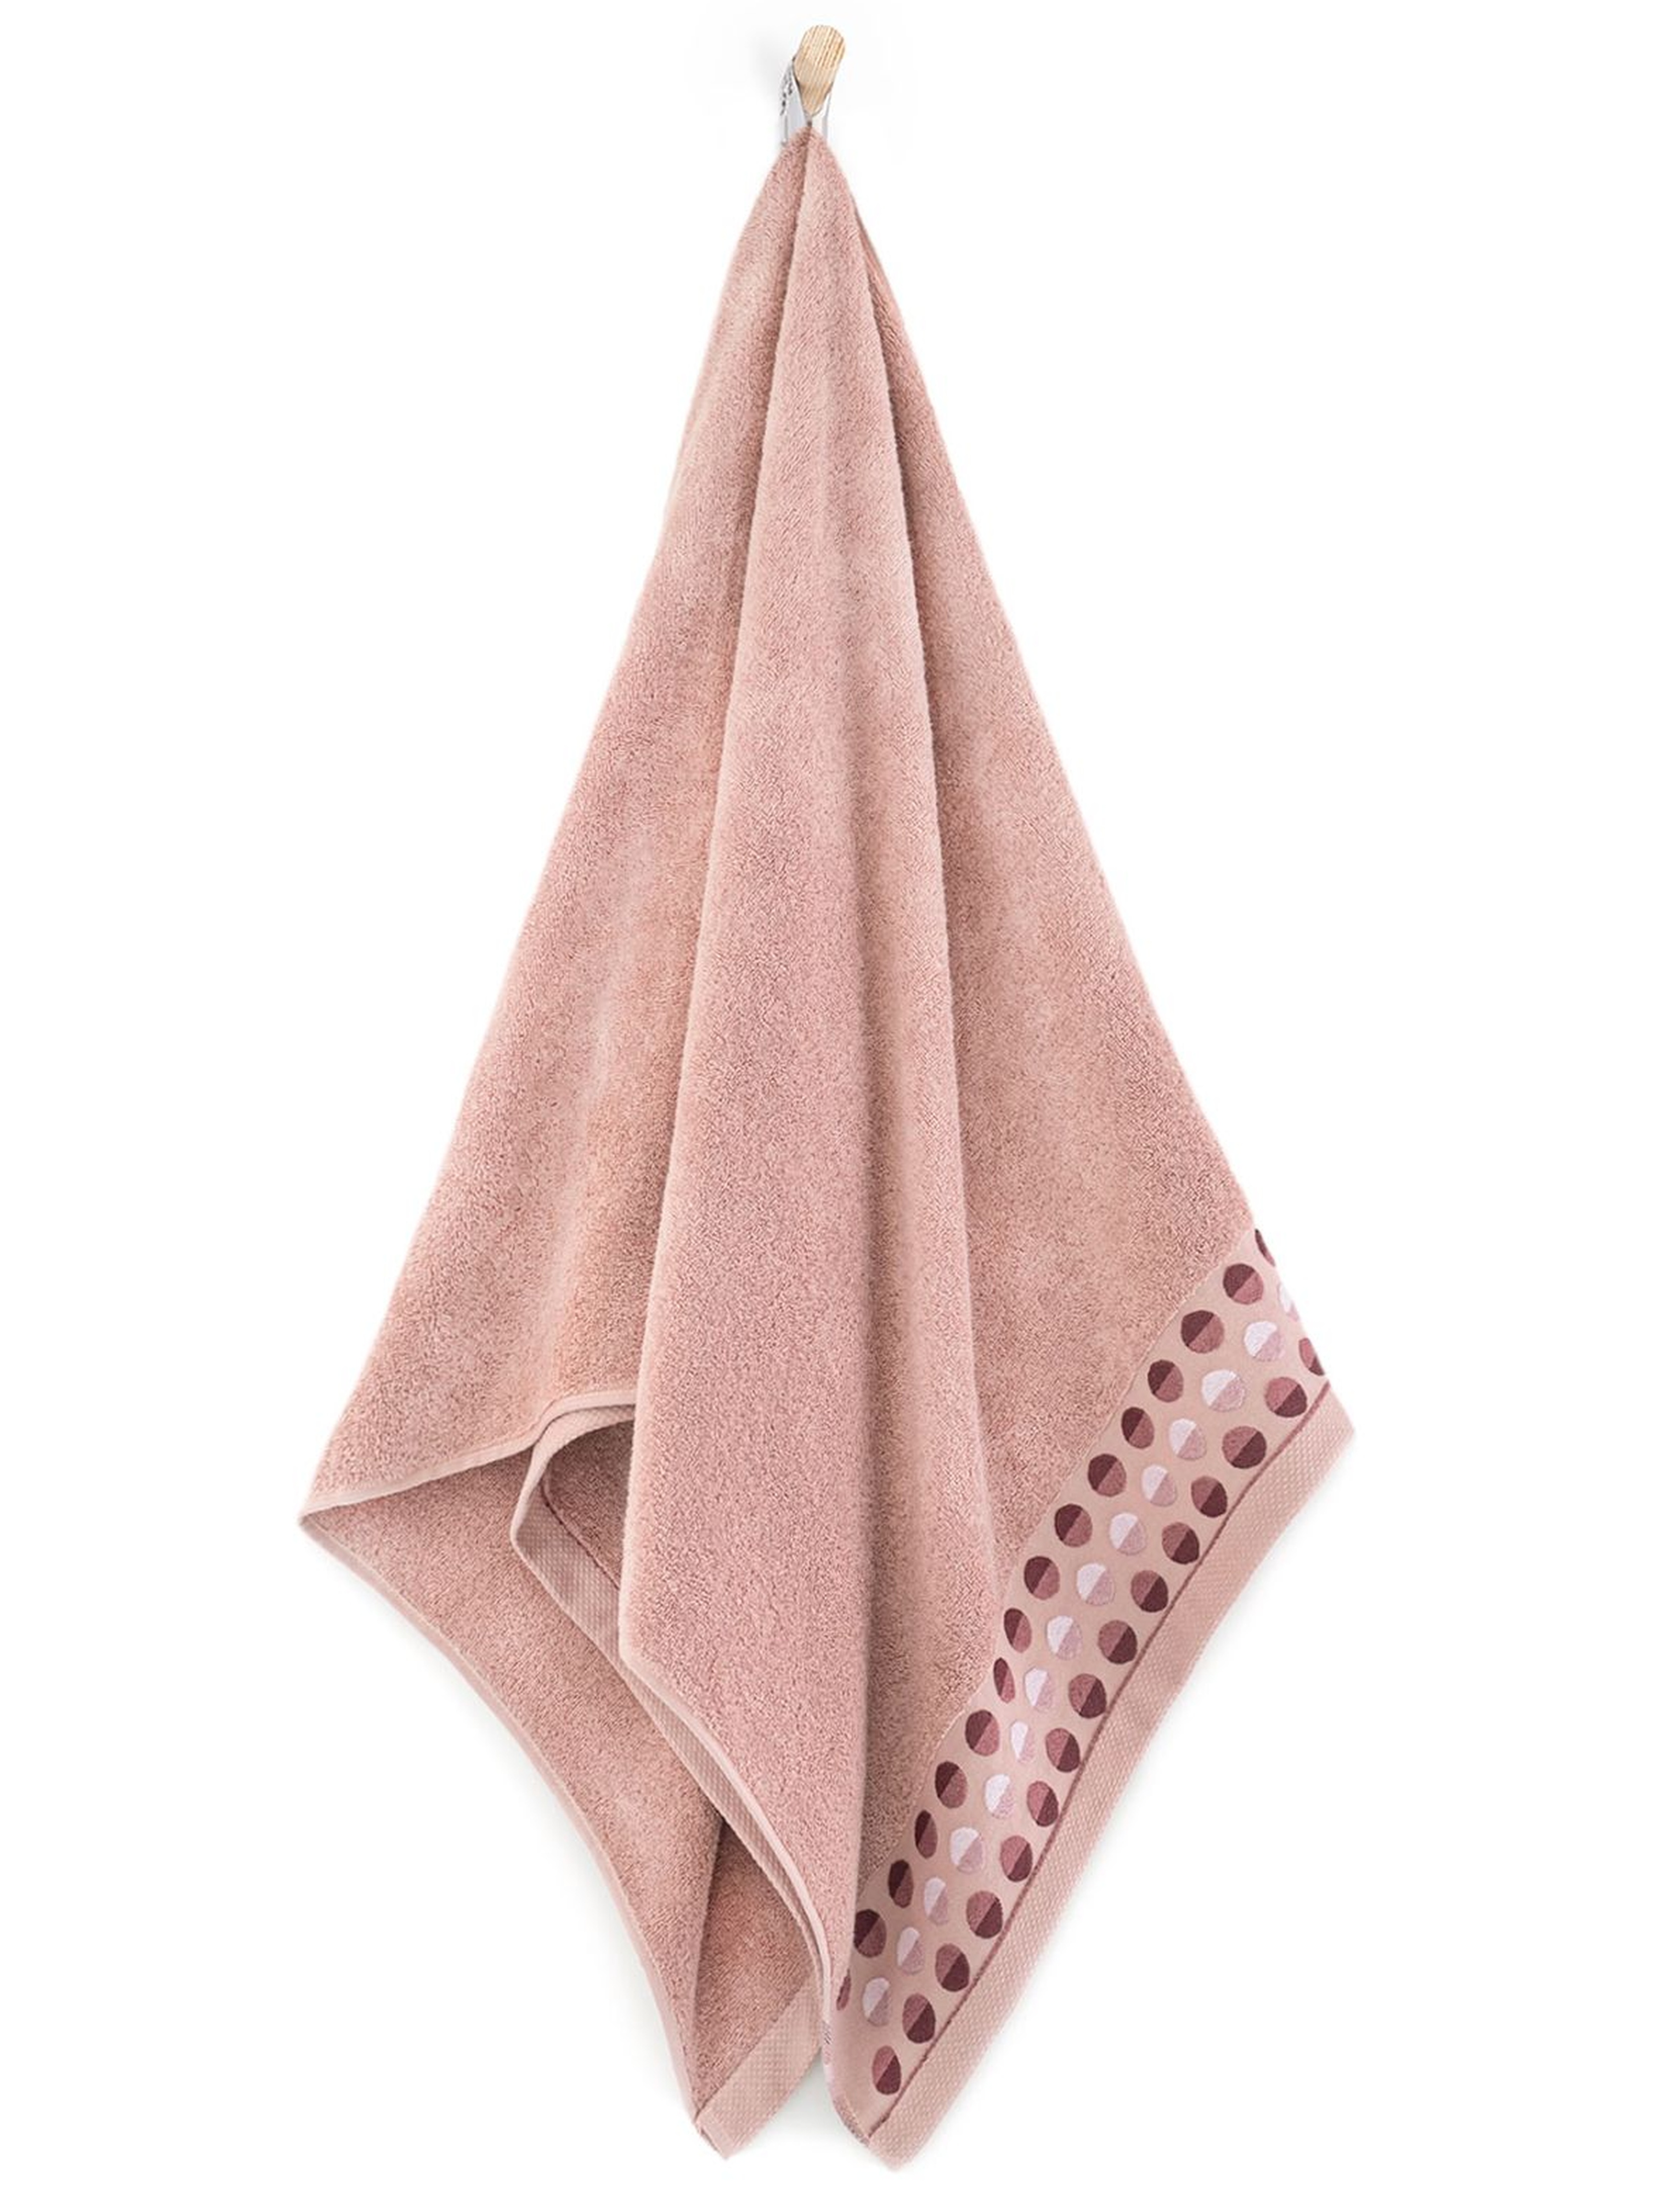 Ręcznik z bawełny egipskiej Zen piwonia 50x90cm